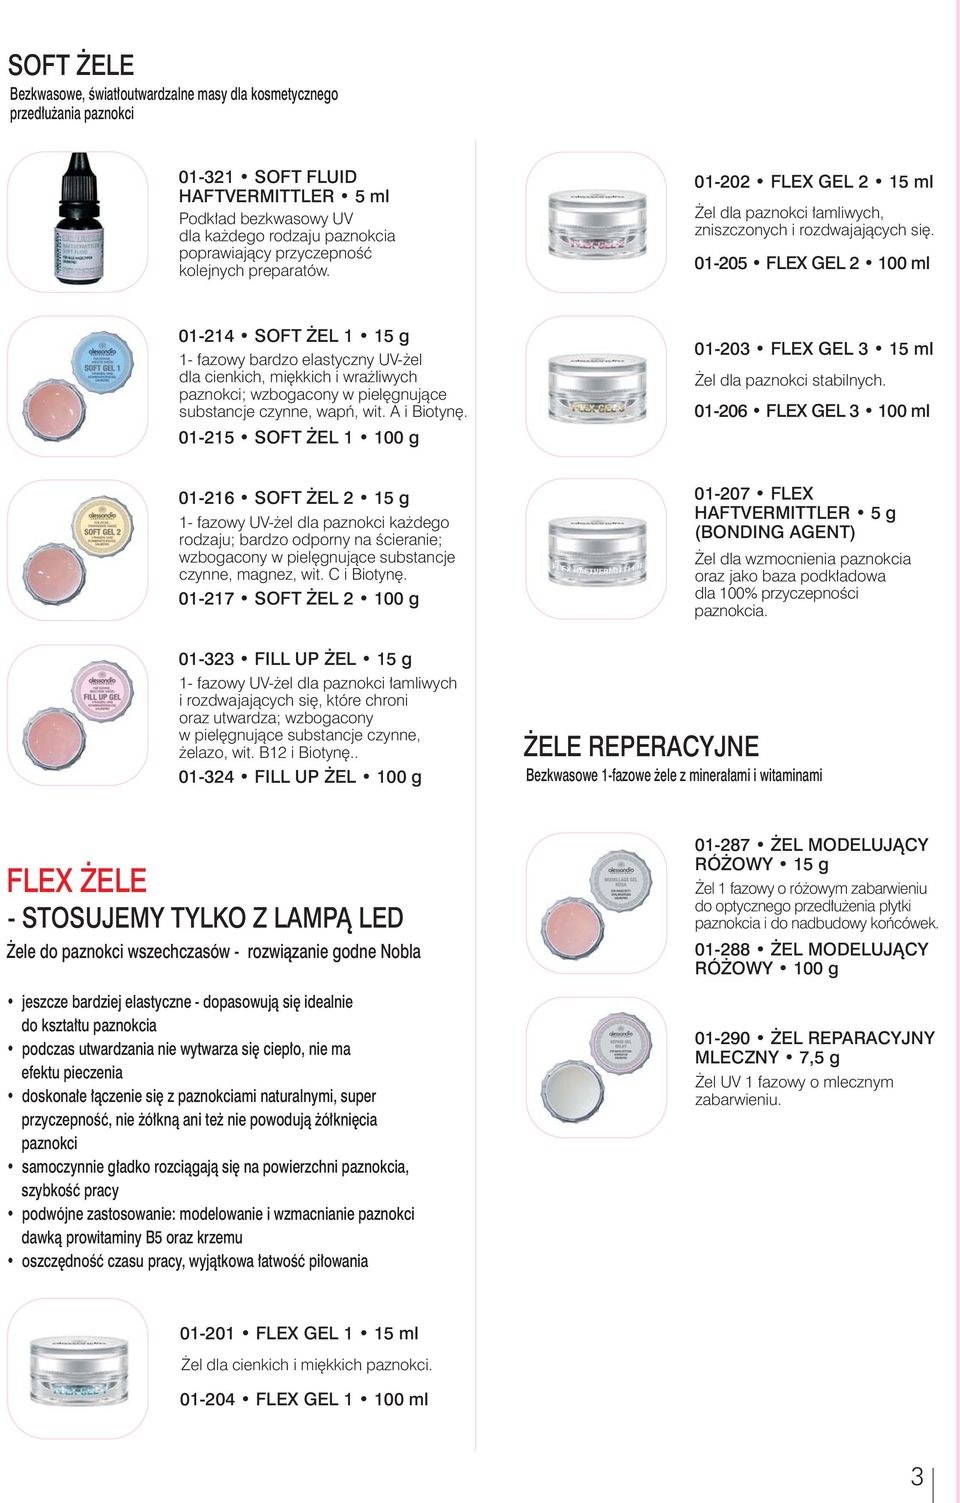 01-205 FLEX GEL 2 100 ml 01-214 SOFT EL 1 15 g 1- fazowy bardzo elastyczny UV- el dla cienkich, miêkkich i wra liwych paznokci; wzbogacony w pielêgnuj¹ce substancje czynne, wapñ, wit. A i Biotynê.